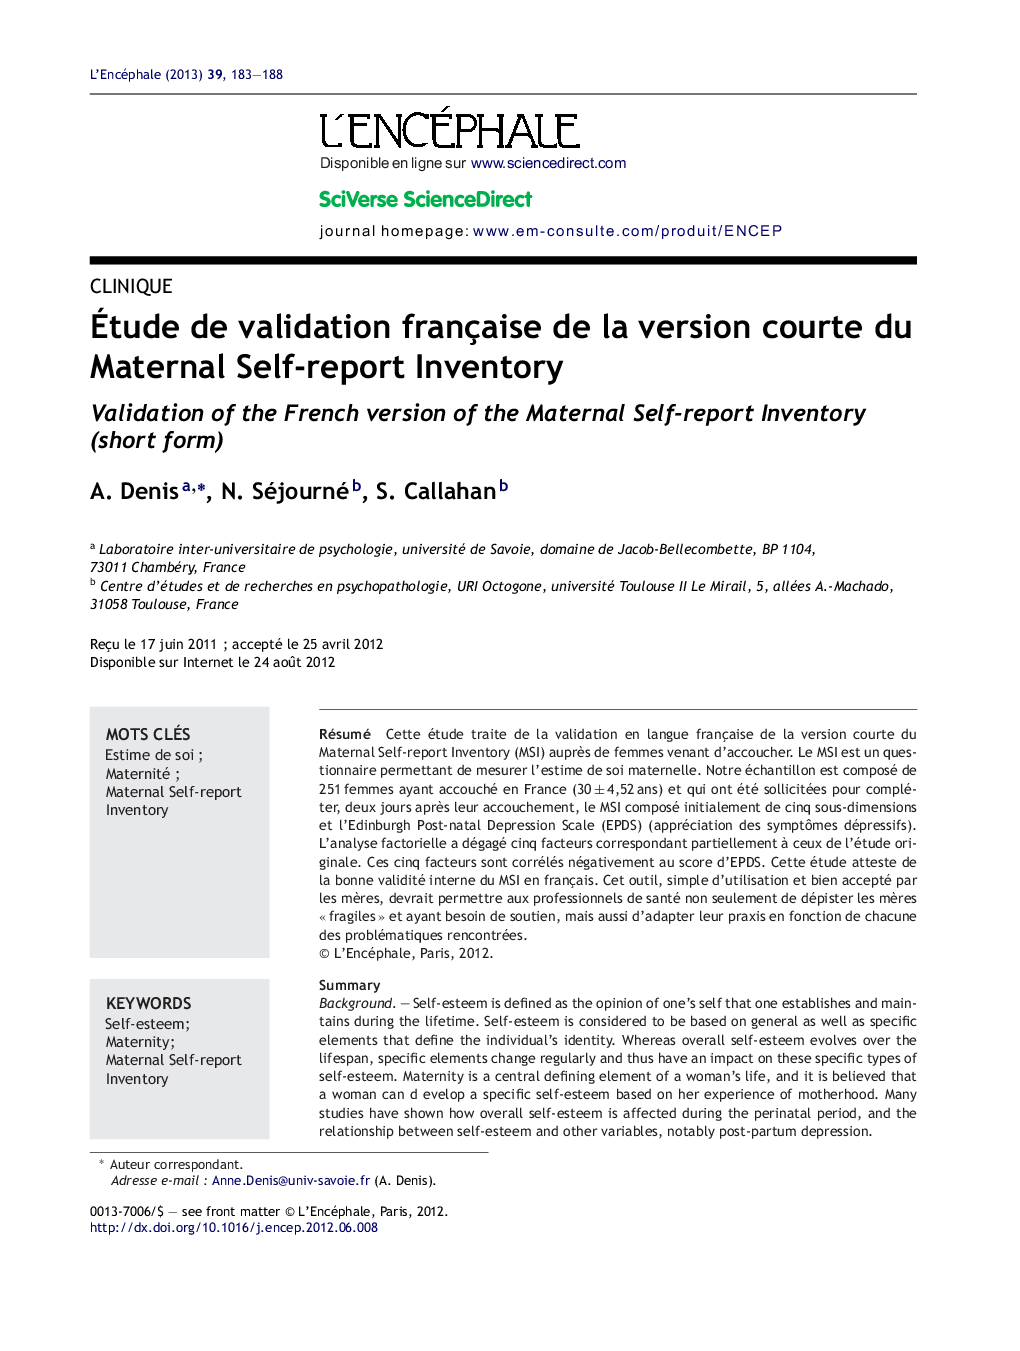 Ãtude de validation française de la version courte du Maternal Self-report Inventory